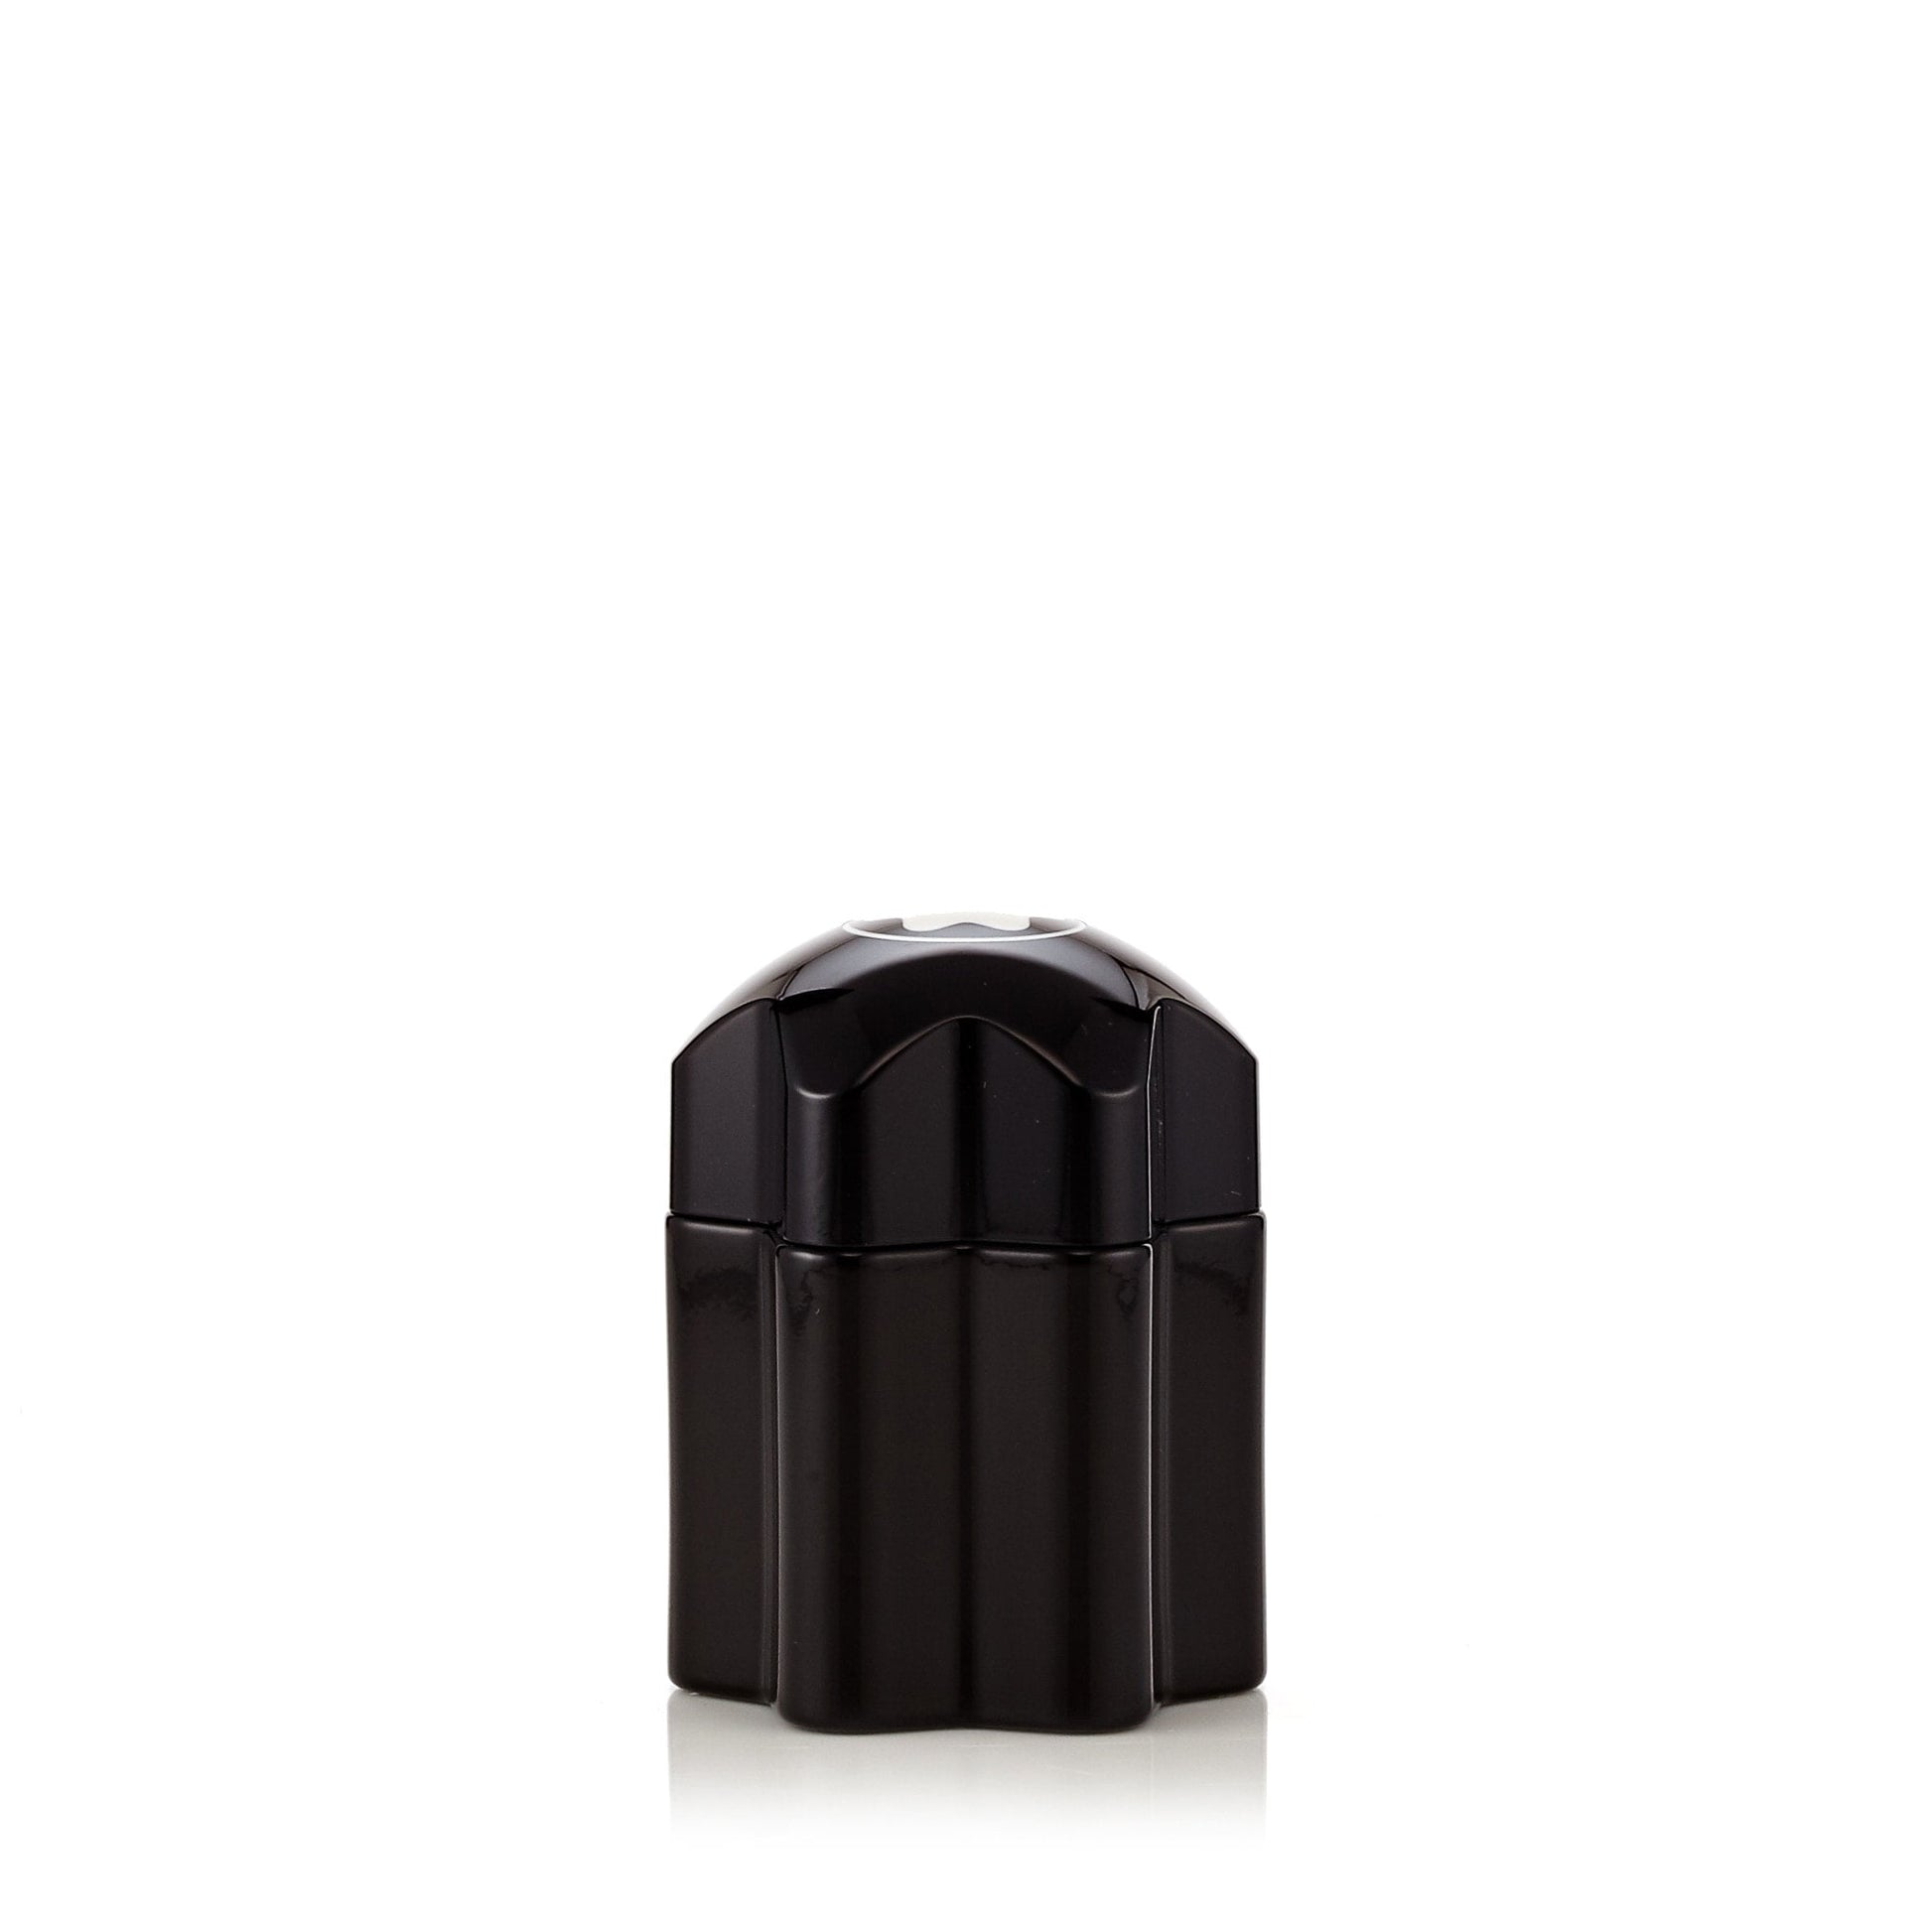 Emblem Eau de Toilette Spray for Men by Montblanc, Product image 2